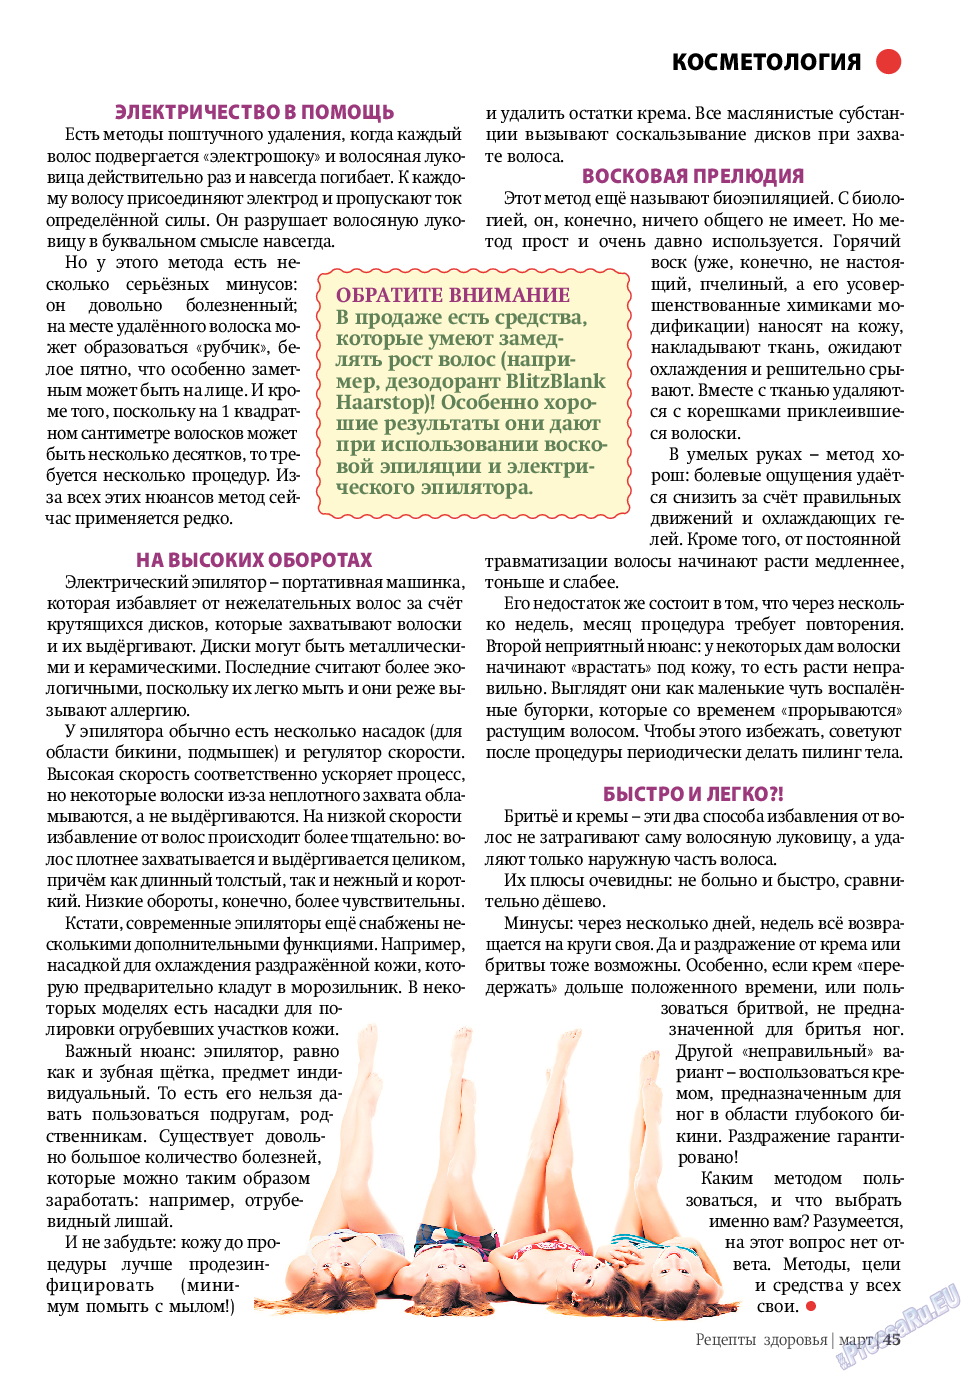 Рецепты здоровья, журнал. 2011 №3 стр.45